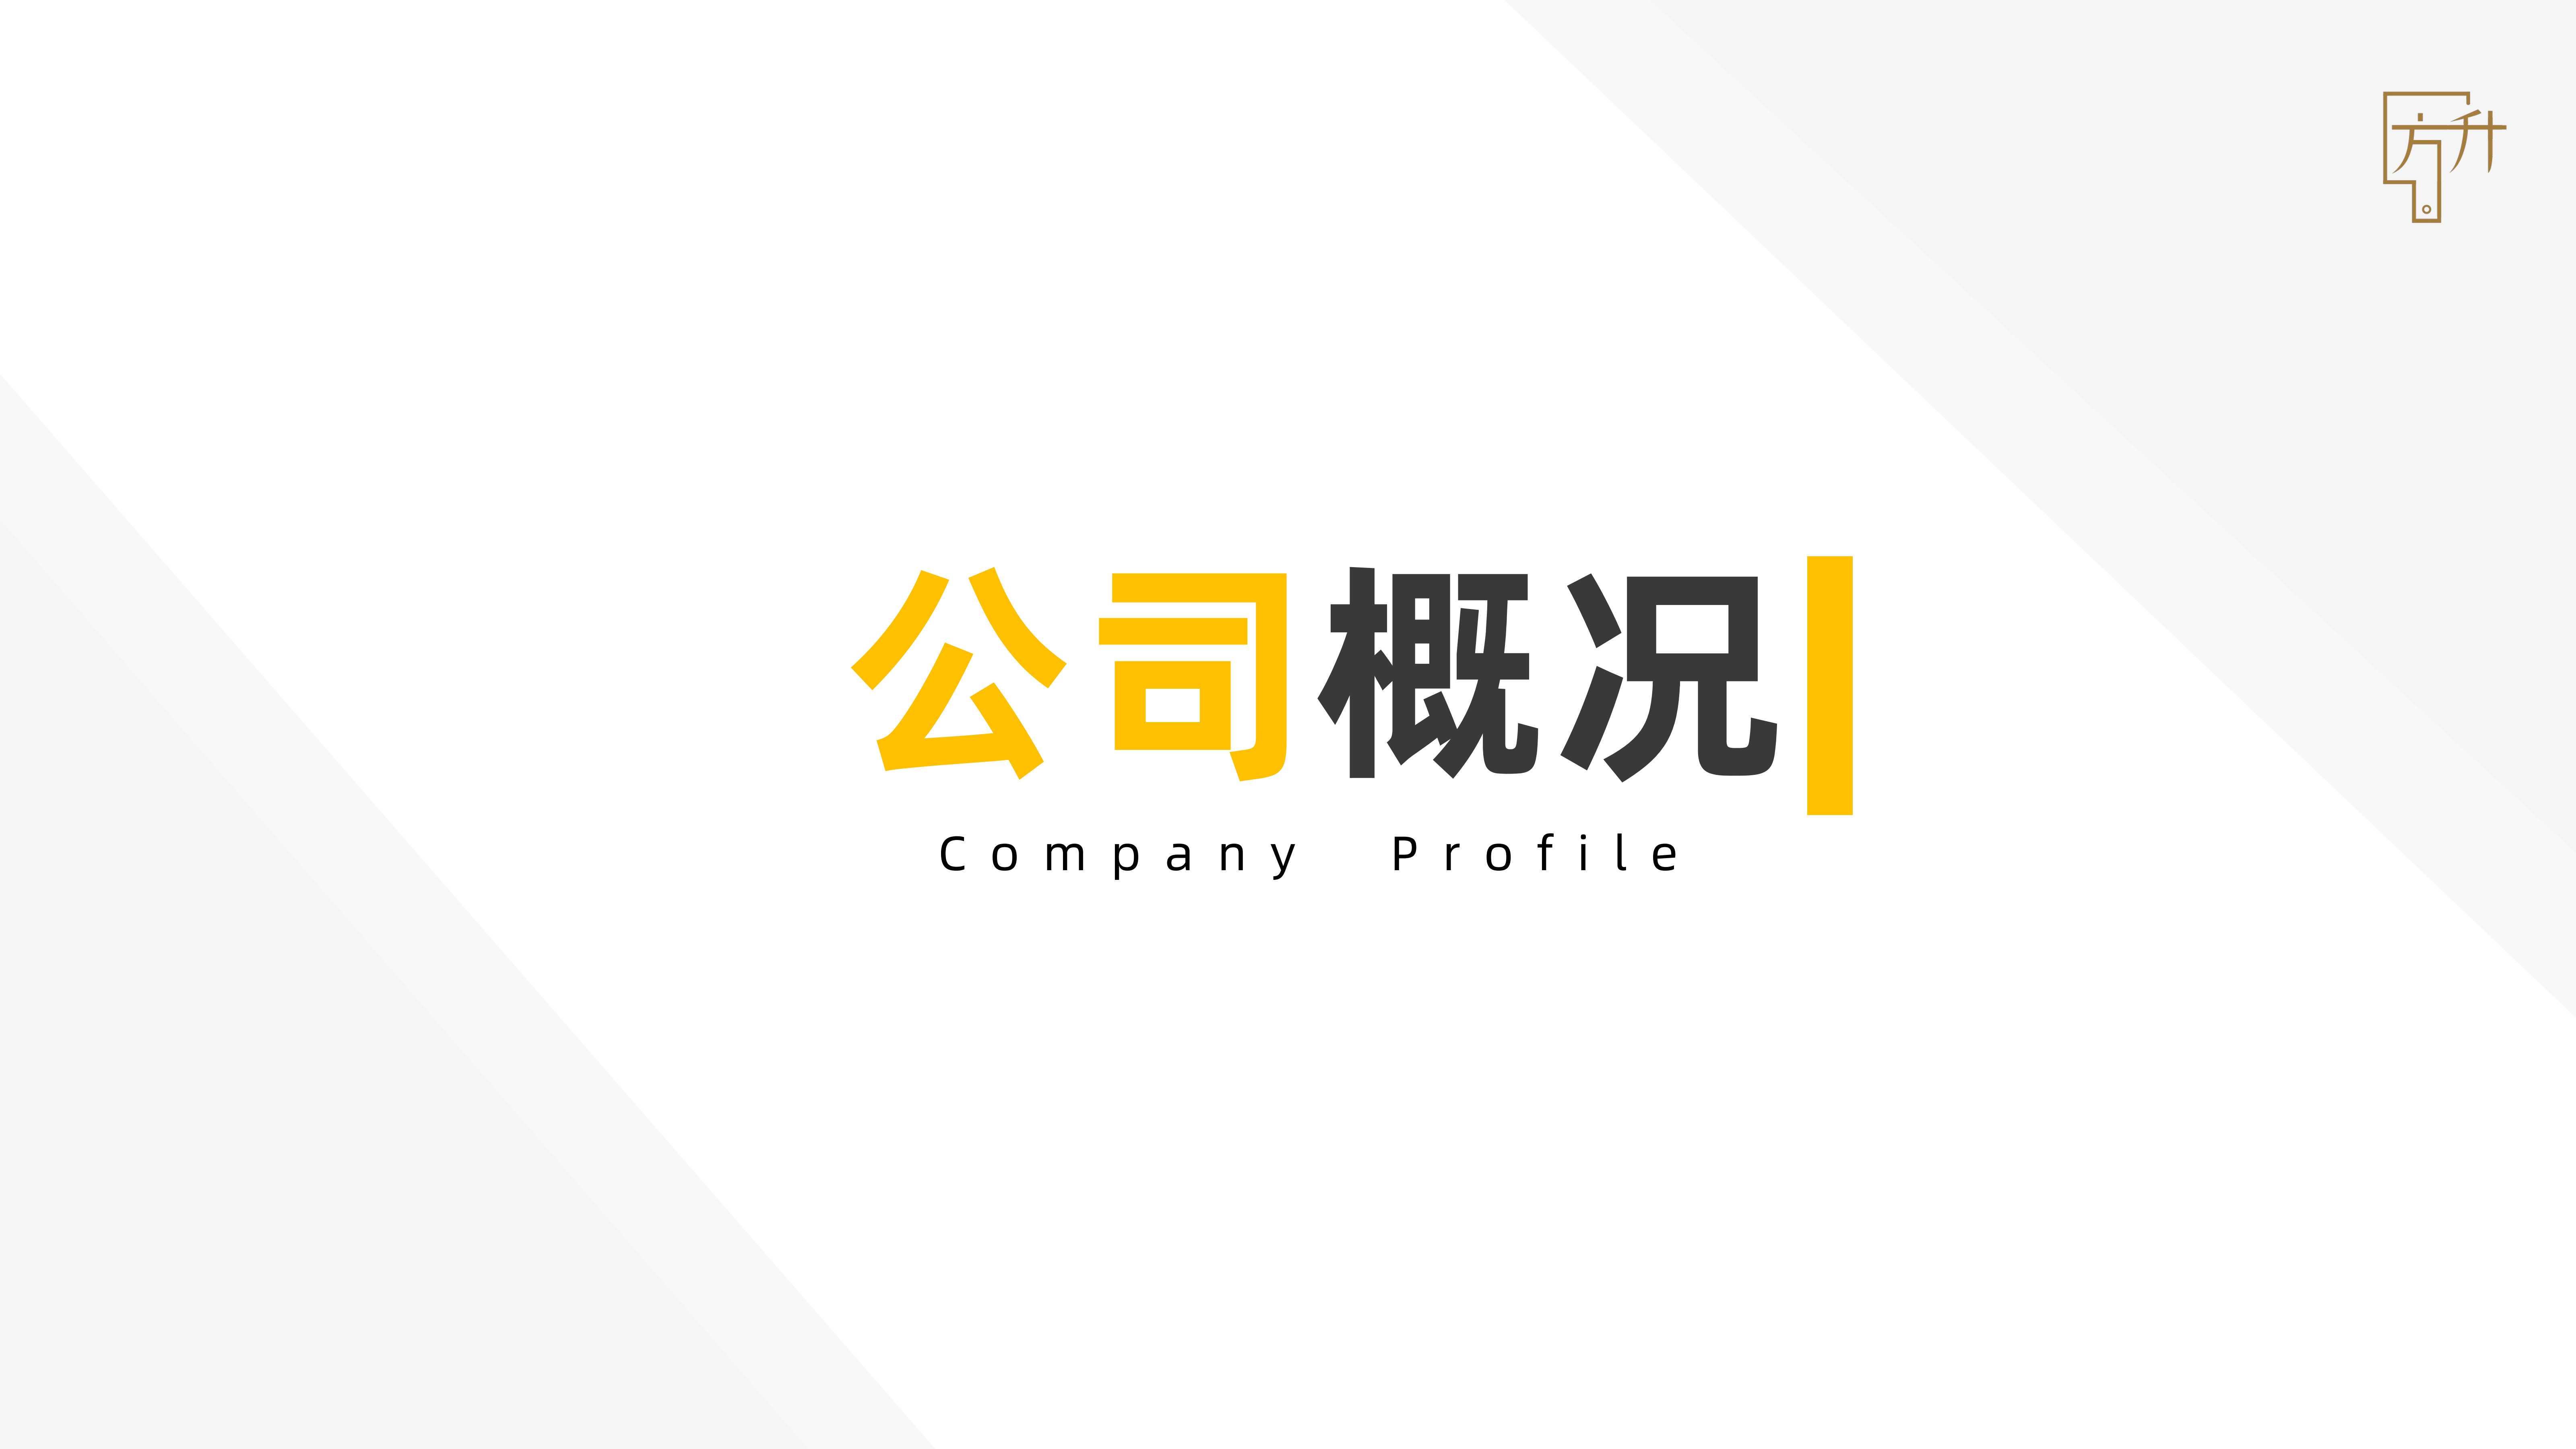 方升研究公司介绍-2022_02.png